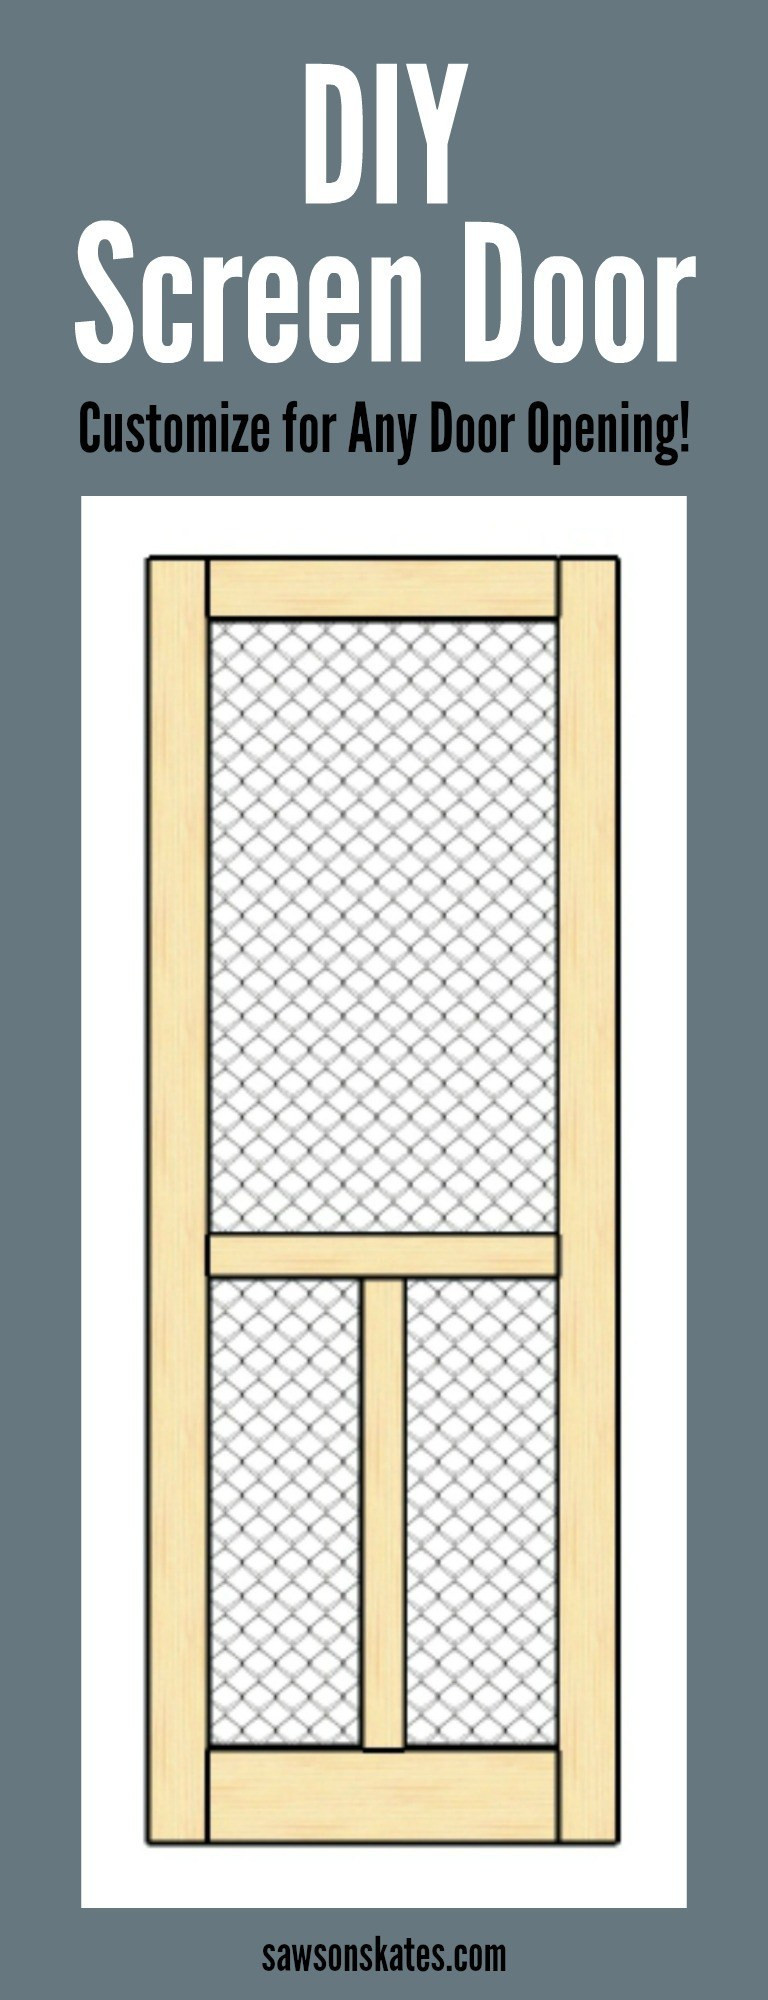 Best ideas about DIY Wooden Screen Door
. Save or Pin DIY Wood Screen Door Now.